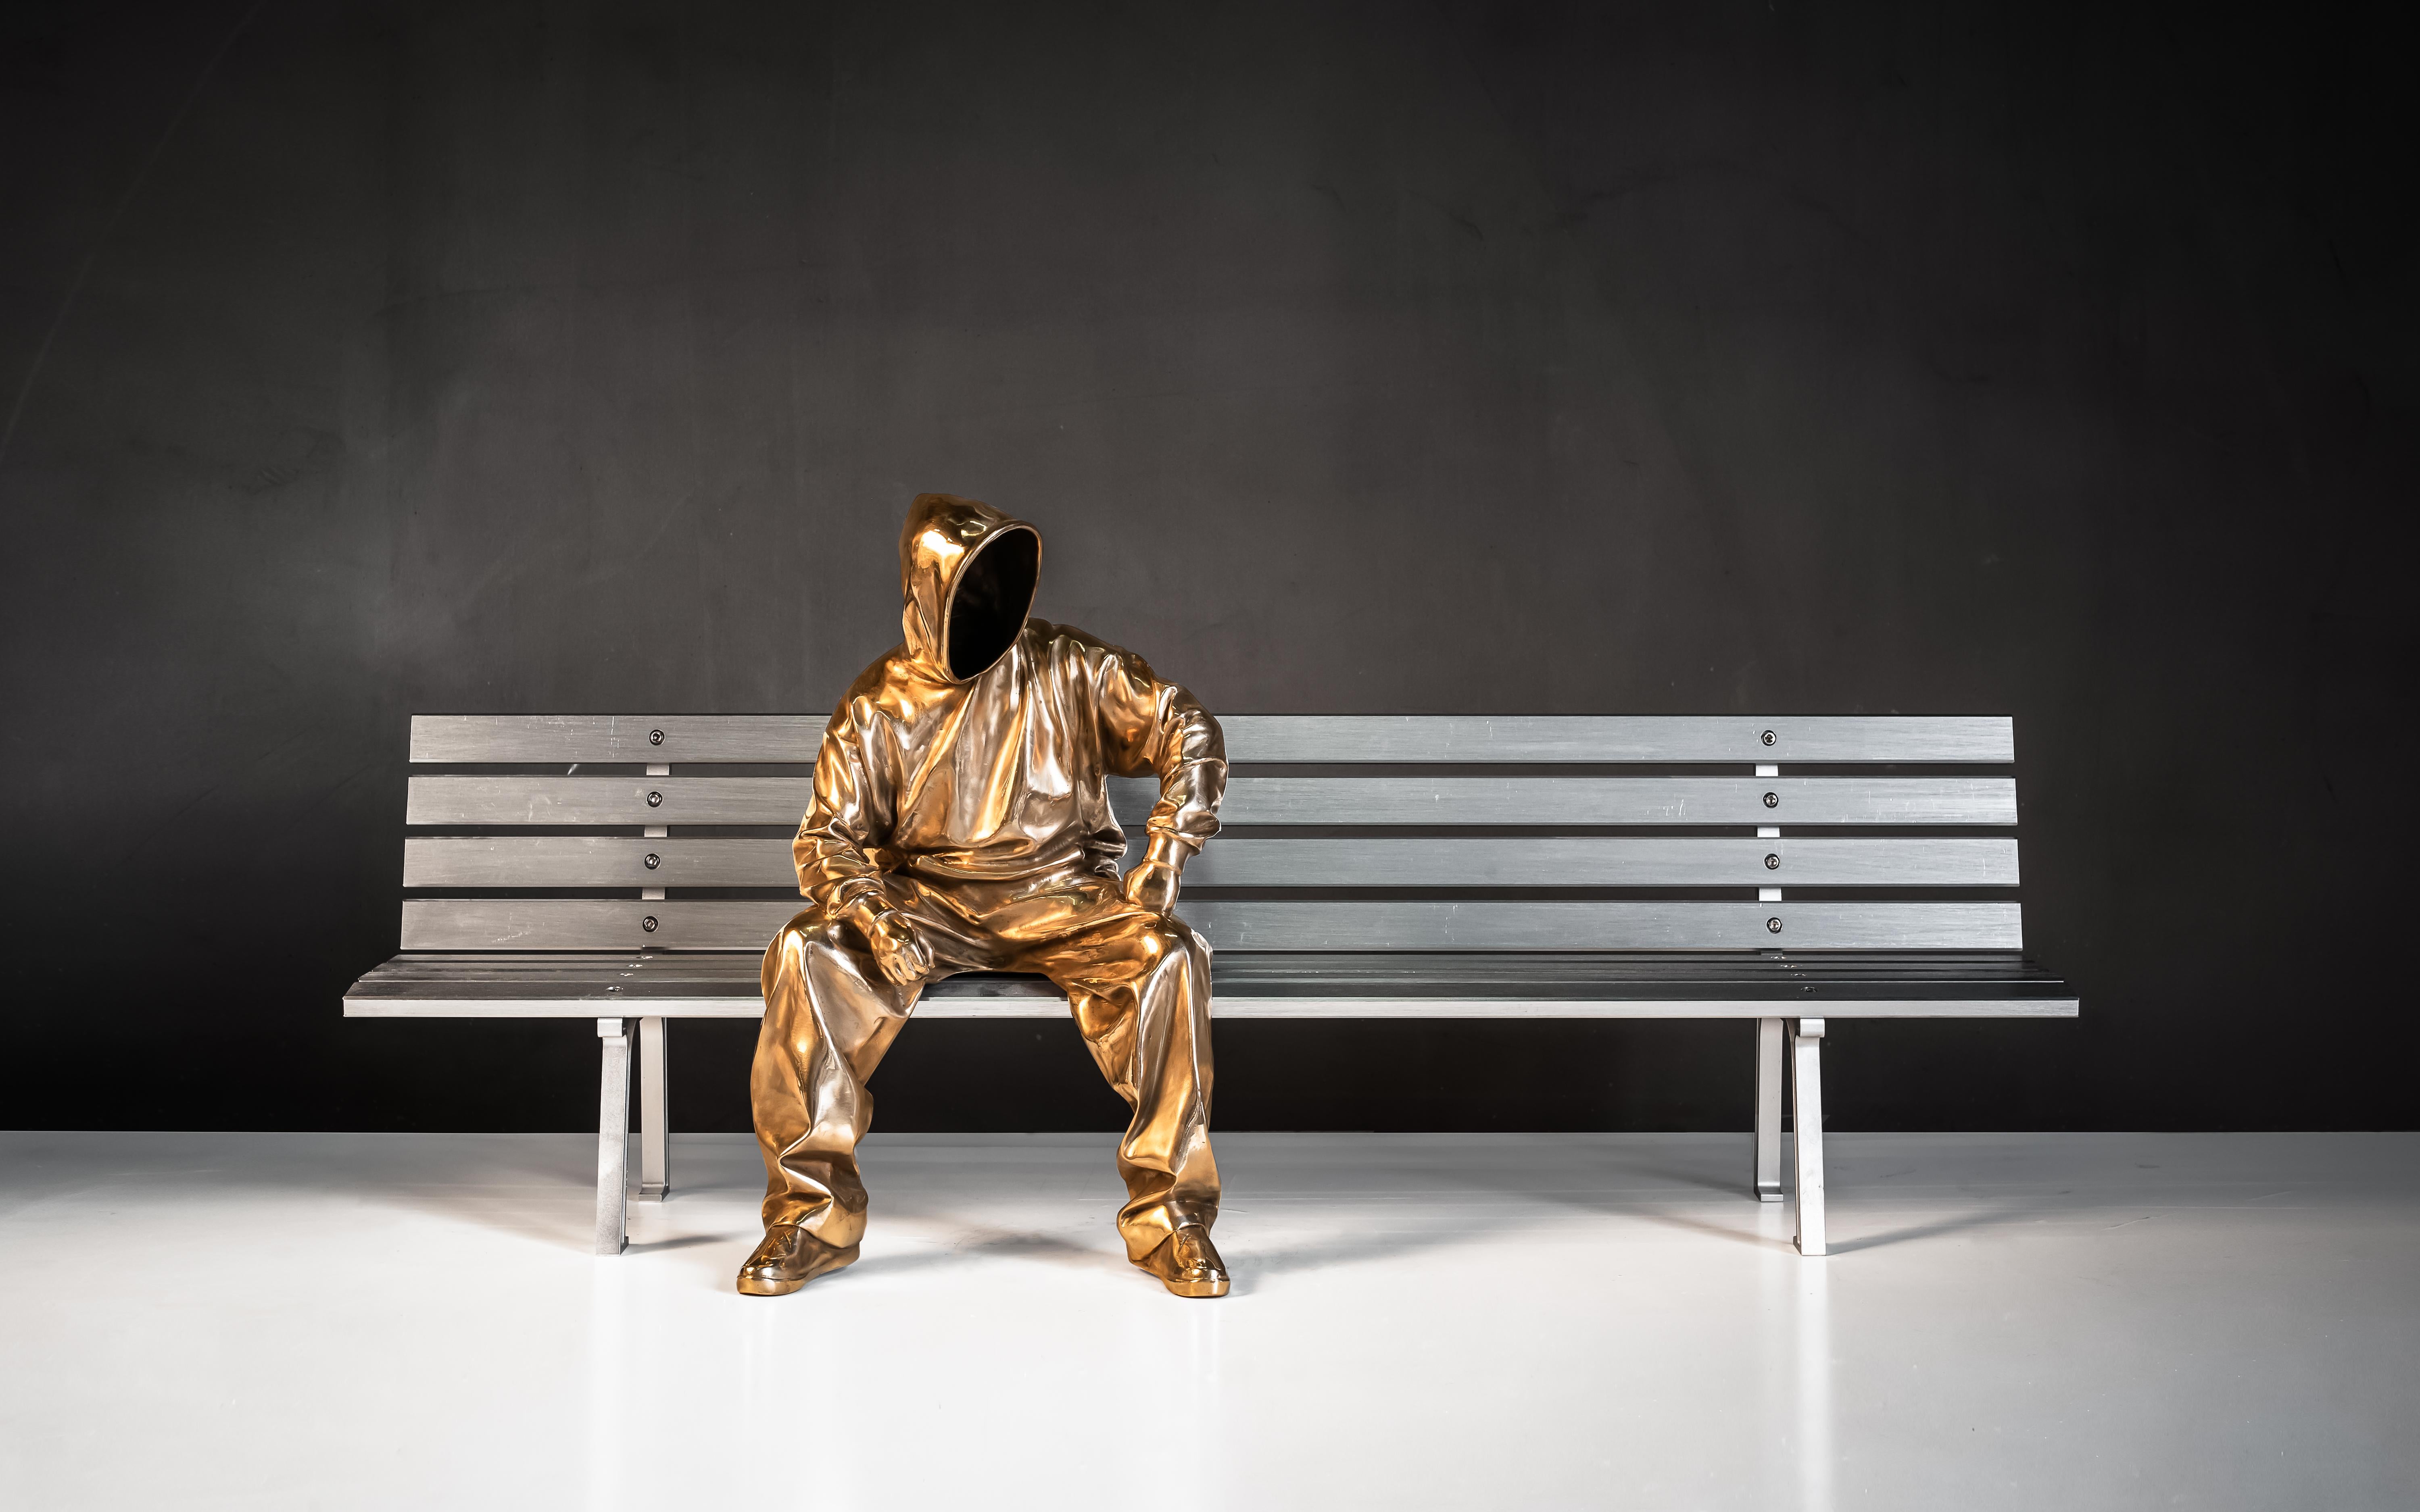 „Be My Size (L)“ Bronzeskulptur 18" x 39" x13" in Auflage 5/8 von Huang Yulong

"Sei meine Größe" 
Skulptur aus Bronze und Aluminium 
2015
18" x 39" x 13" Zoll

ÜBER DEN KÜNSTLER
Huang Yulong wurde 1983 in der Provinz Anhui, China, geboren. Im Jahr